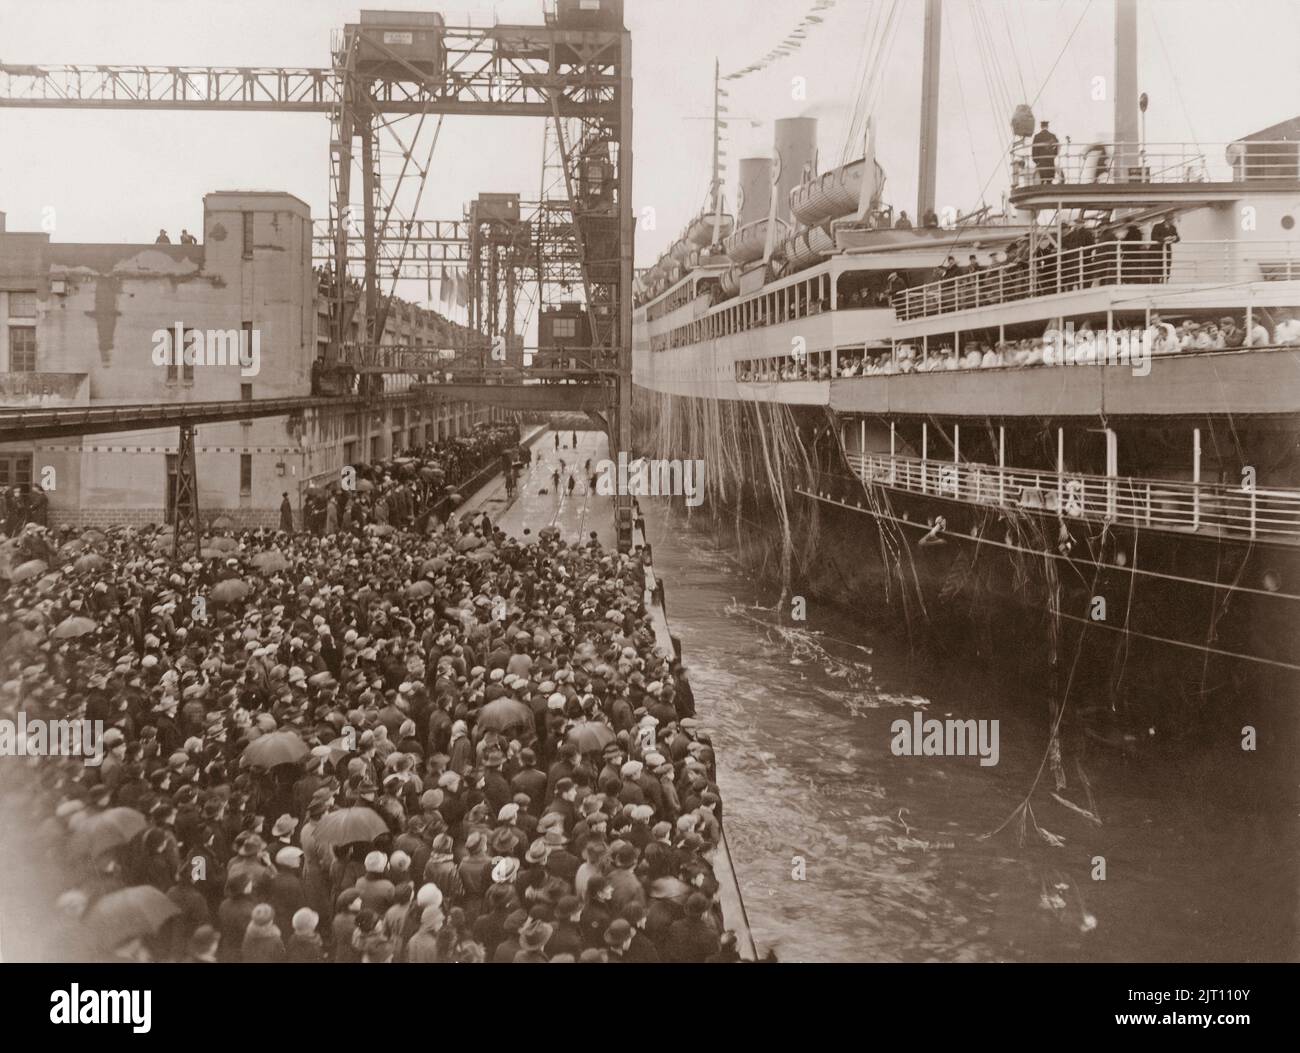 Das Jahr ist 1927. Das schwedisch-amerikanische Linienschiff M/S Gripsholm verlässt den Hafen von Göteborg für eine sechswöchige mittelmeerkreuzfahrt. Das Schiff Gripsholm galt damals mit einer Länge von 168,5 Metern als eines der luxuriösesten Schiffe auf dem Atlantik. Die berühmten Menschen dieser Zeit reisten mit ihr. Stockfoto